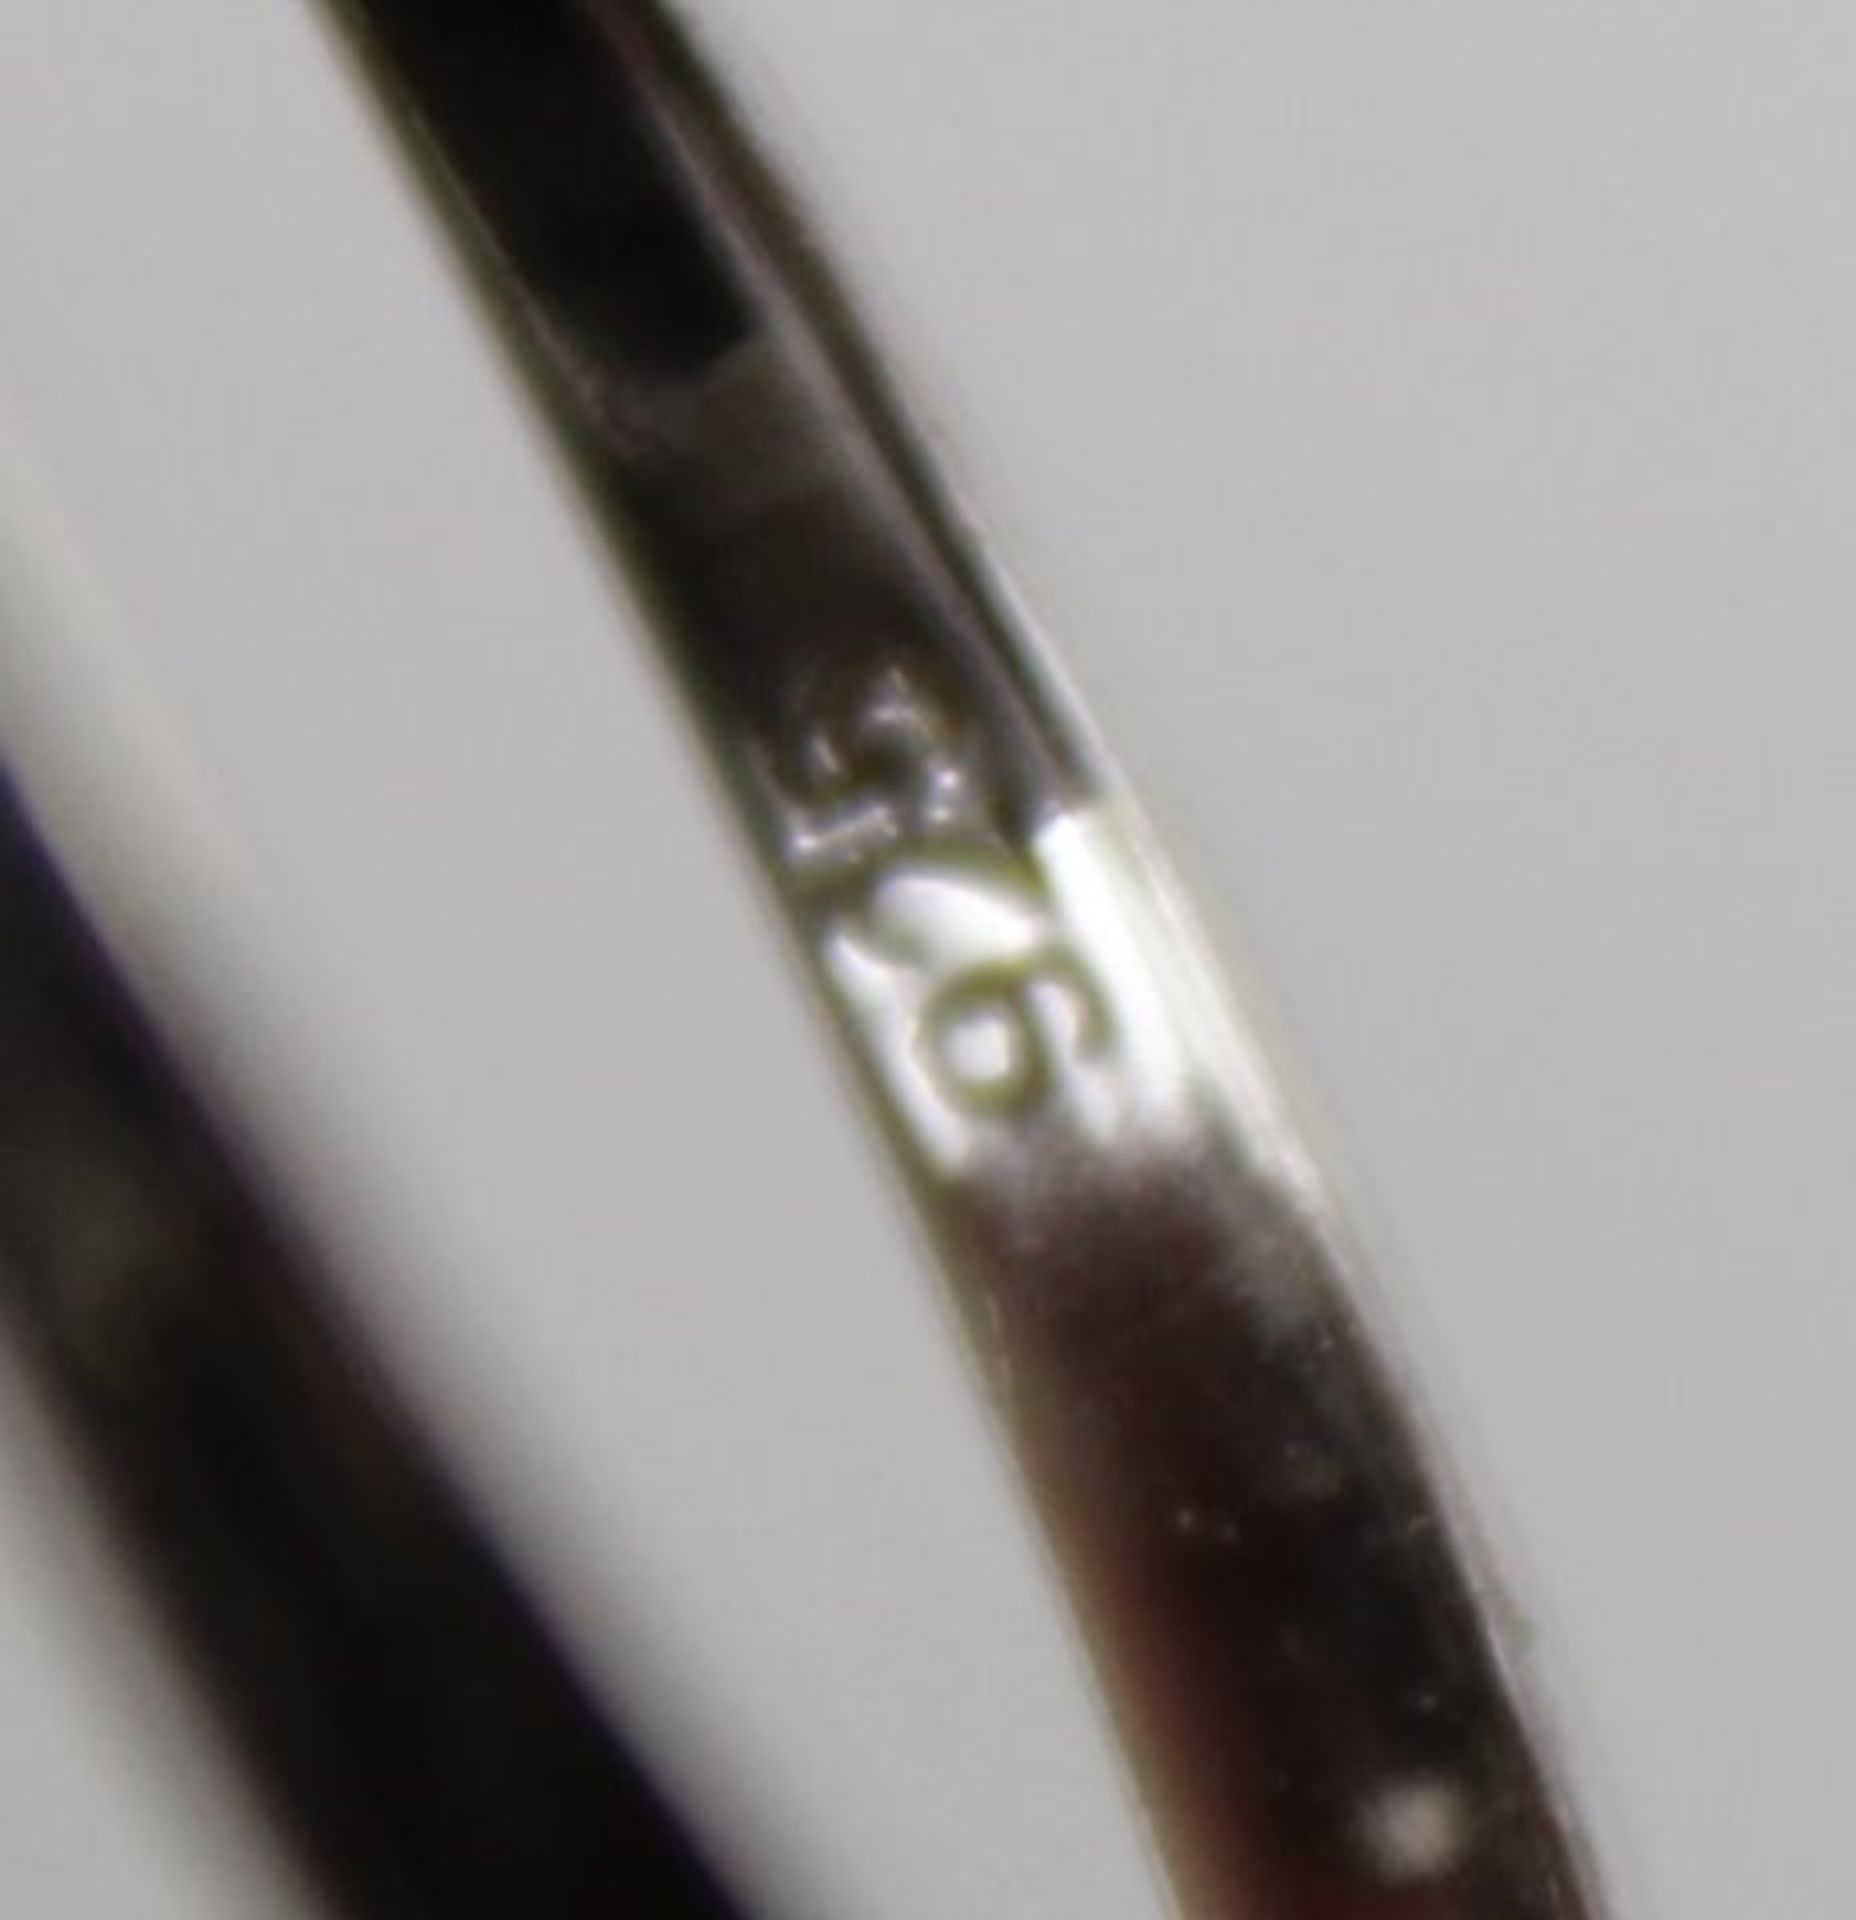 925er Silber-Ring mit Perle und klaren Steinen, RG 57, 3,4gr. - Bild 5 aus 5